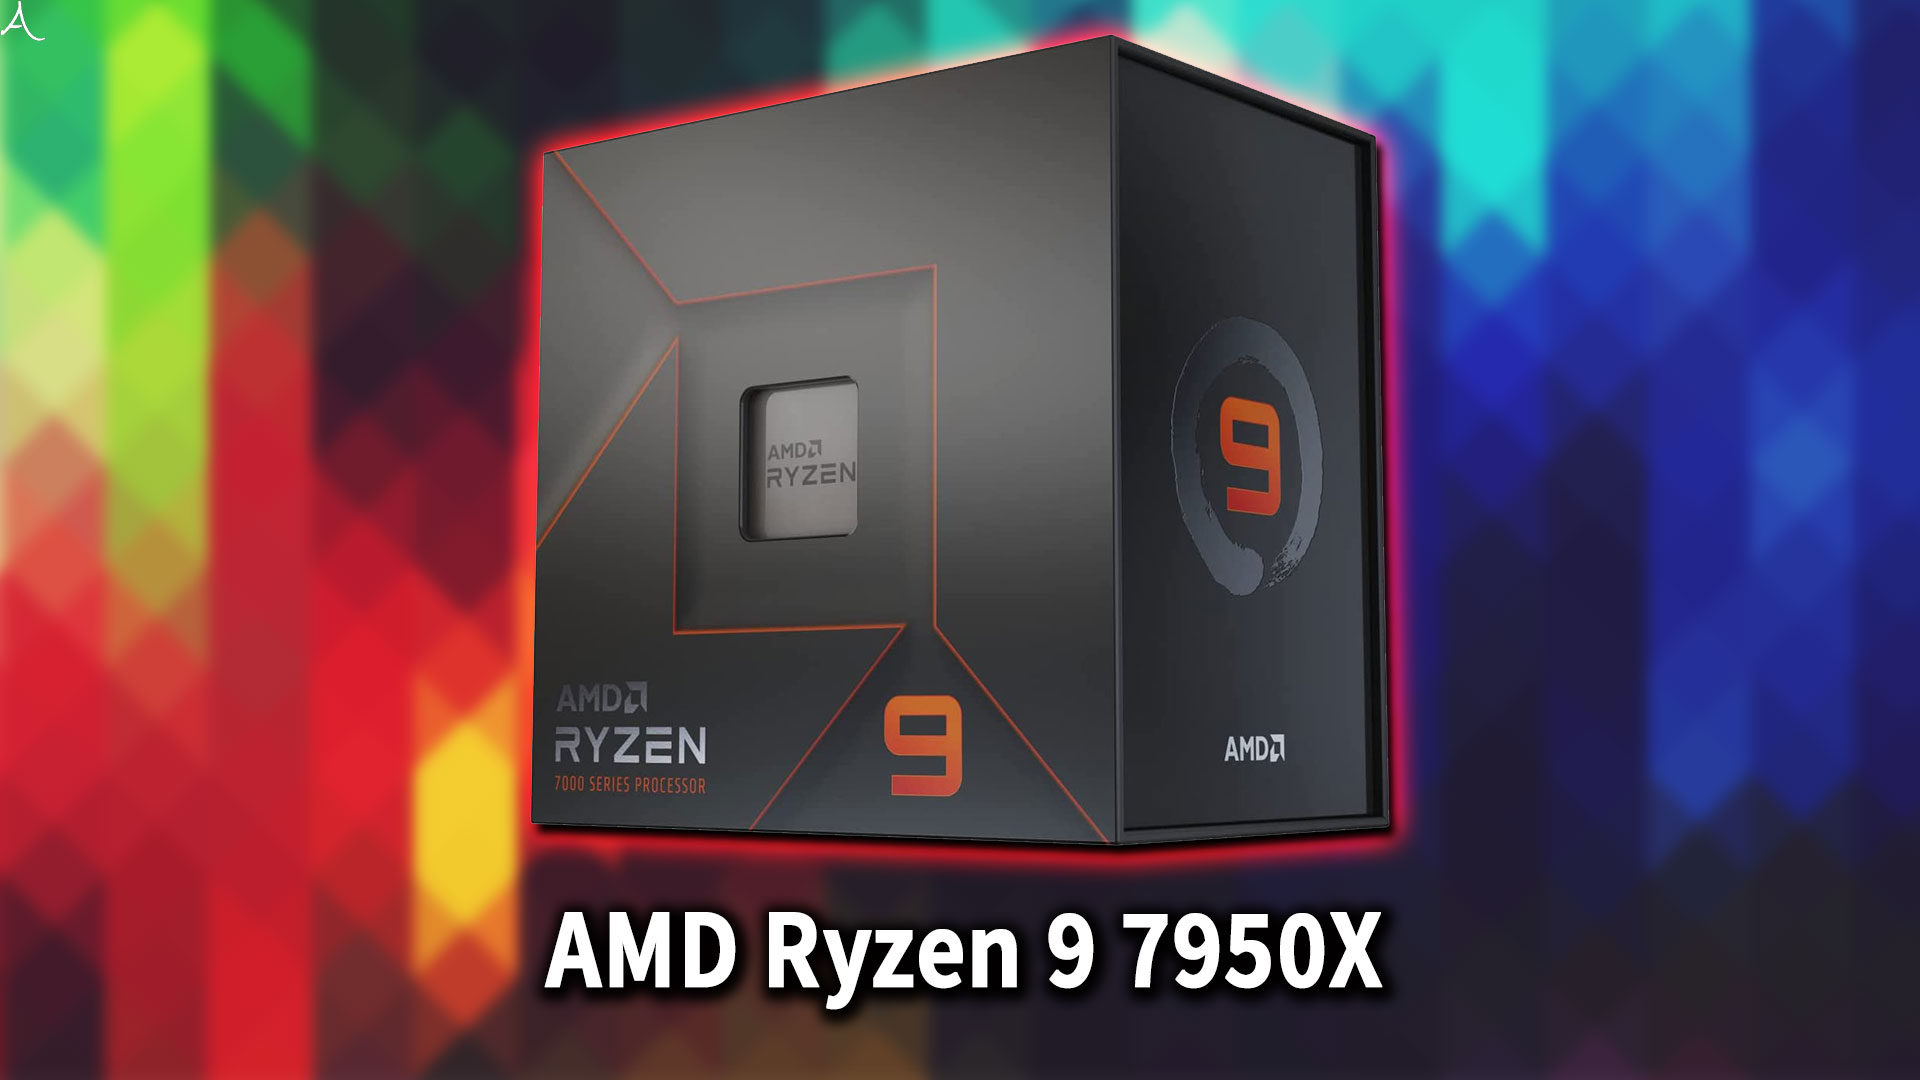 ｢AMD Ryzen 9 7900X｣に対応するマザーボードはどれ？おすすめは？